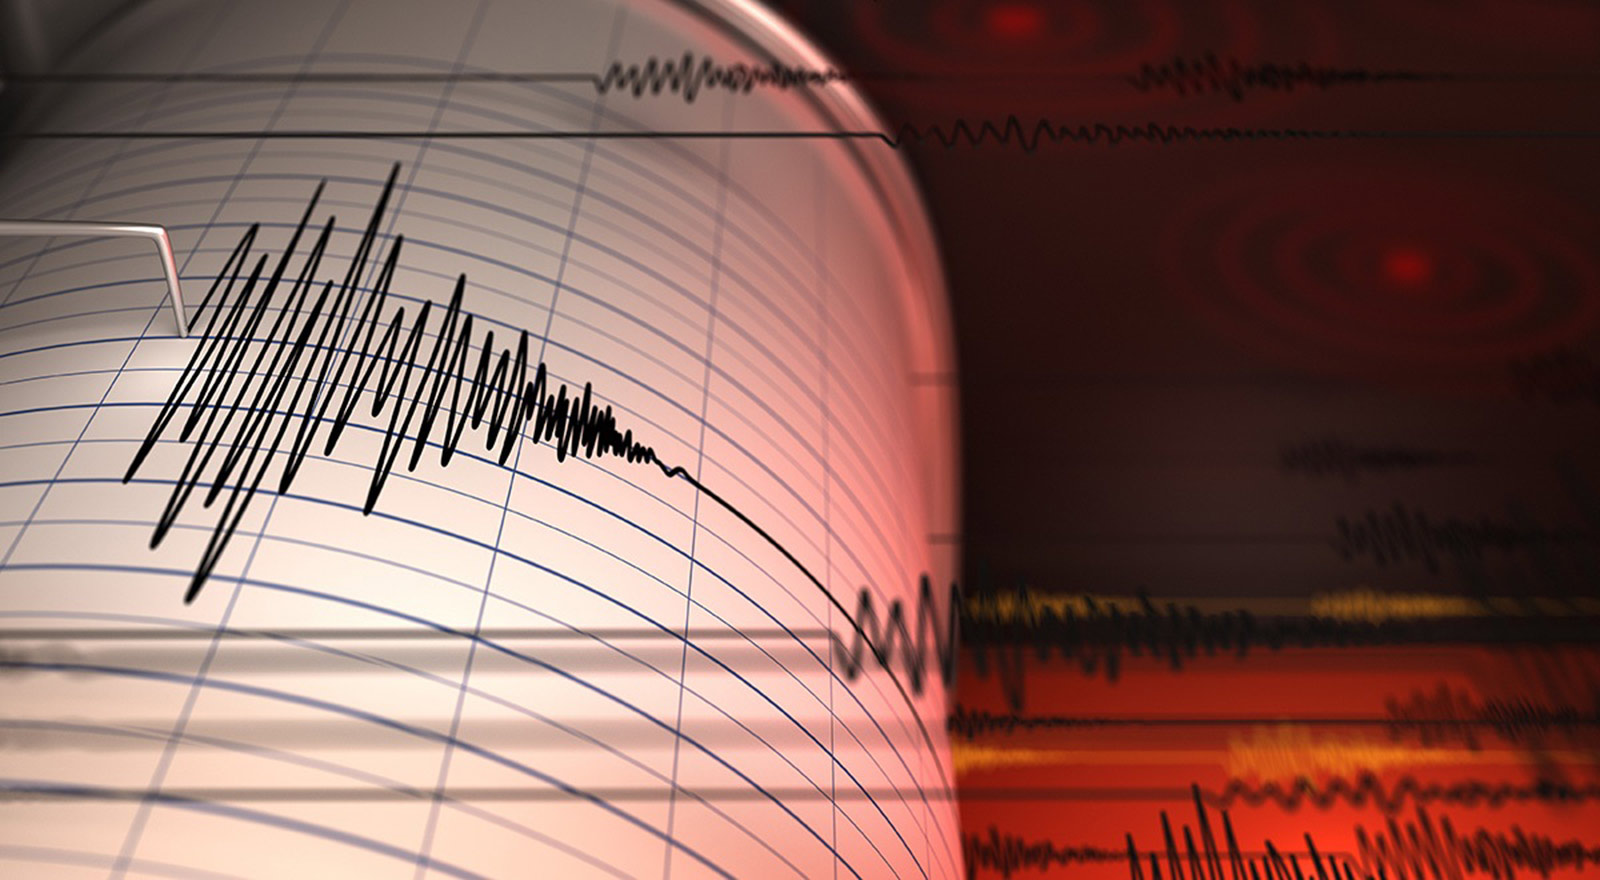 زلزال بقوة 4.3 درجات يضرب شمال غربي الجزائر